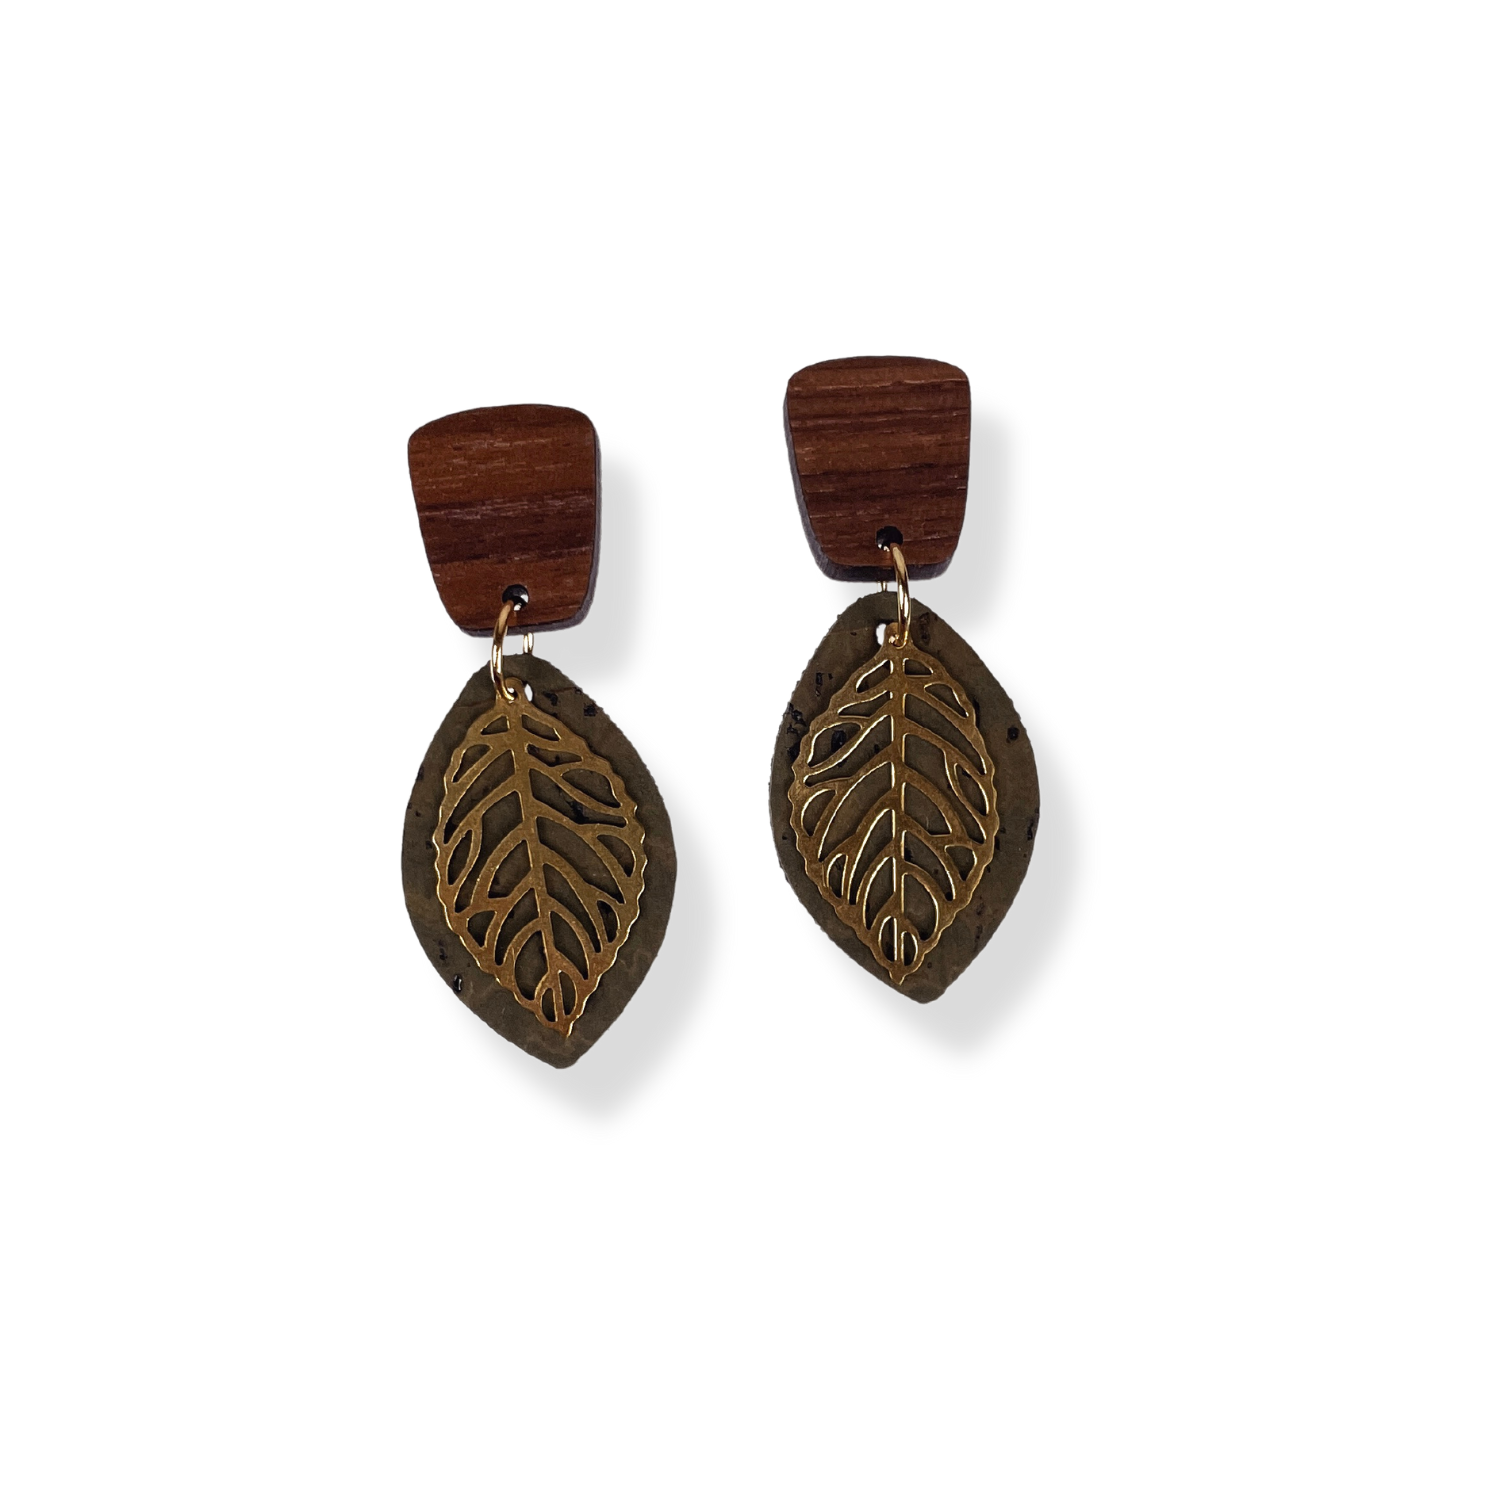 Aspen Walnut Wood and Cork Earrings